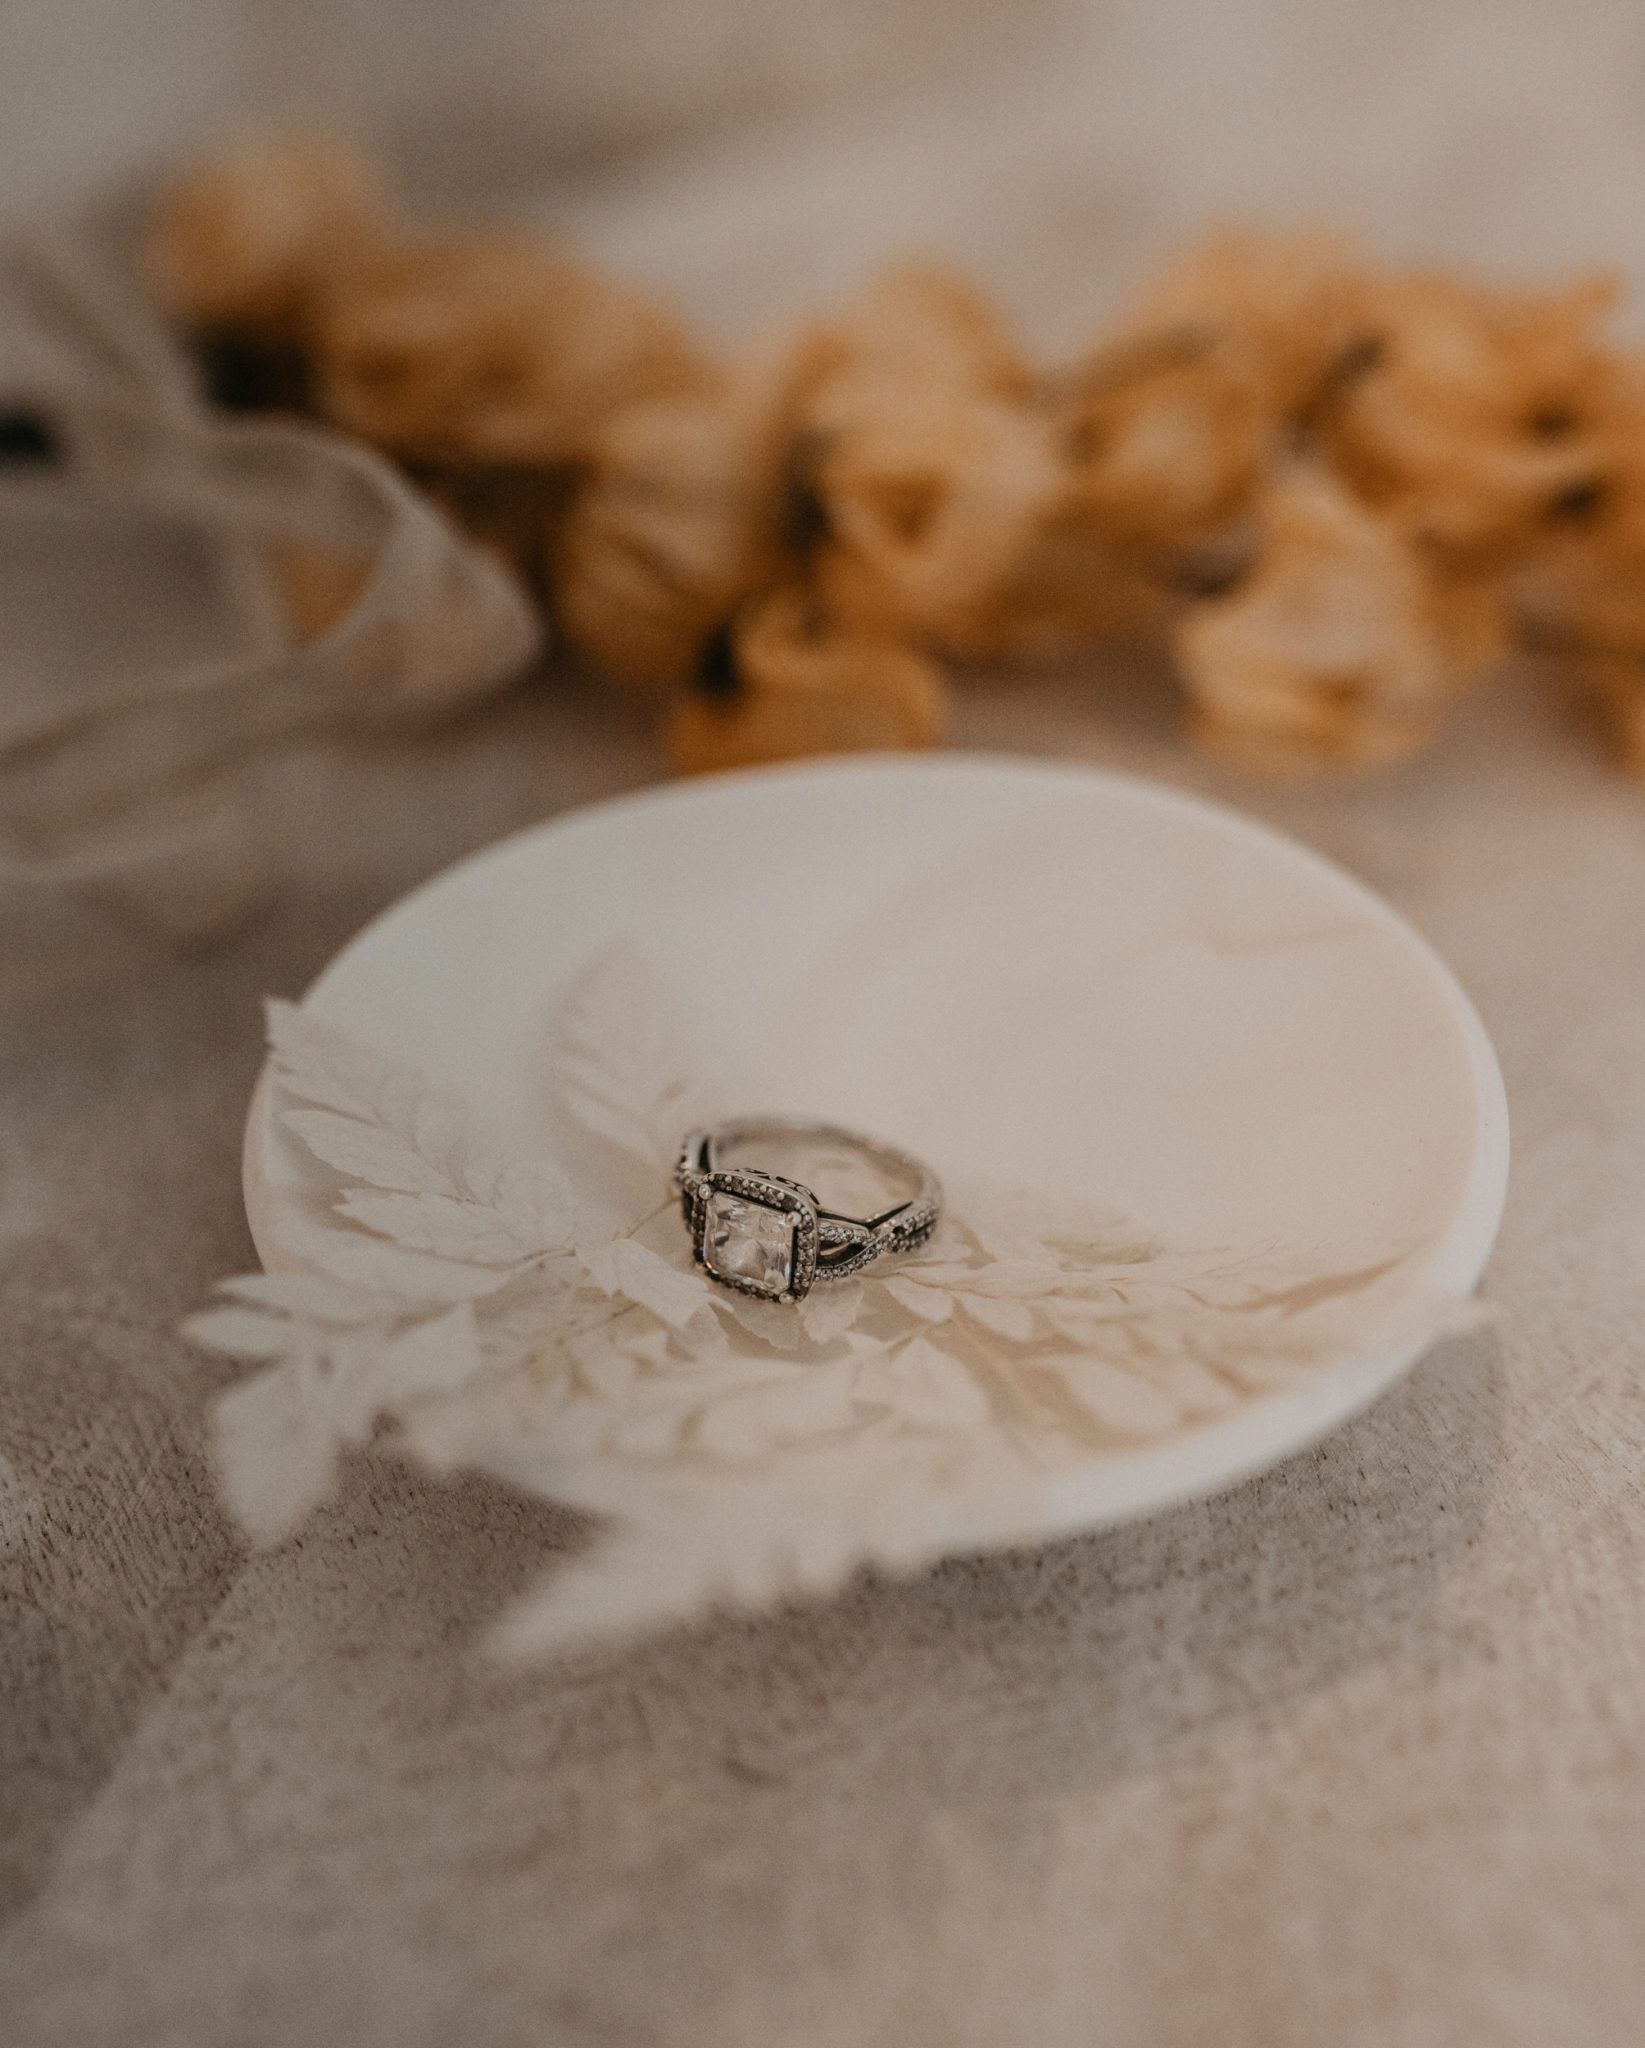 Wedding ring details 